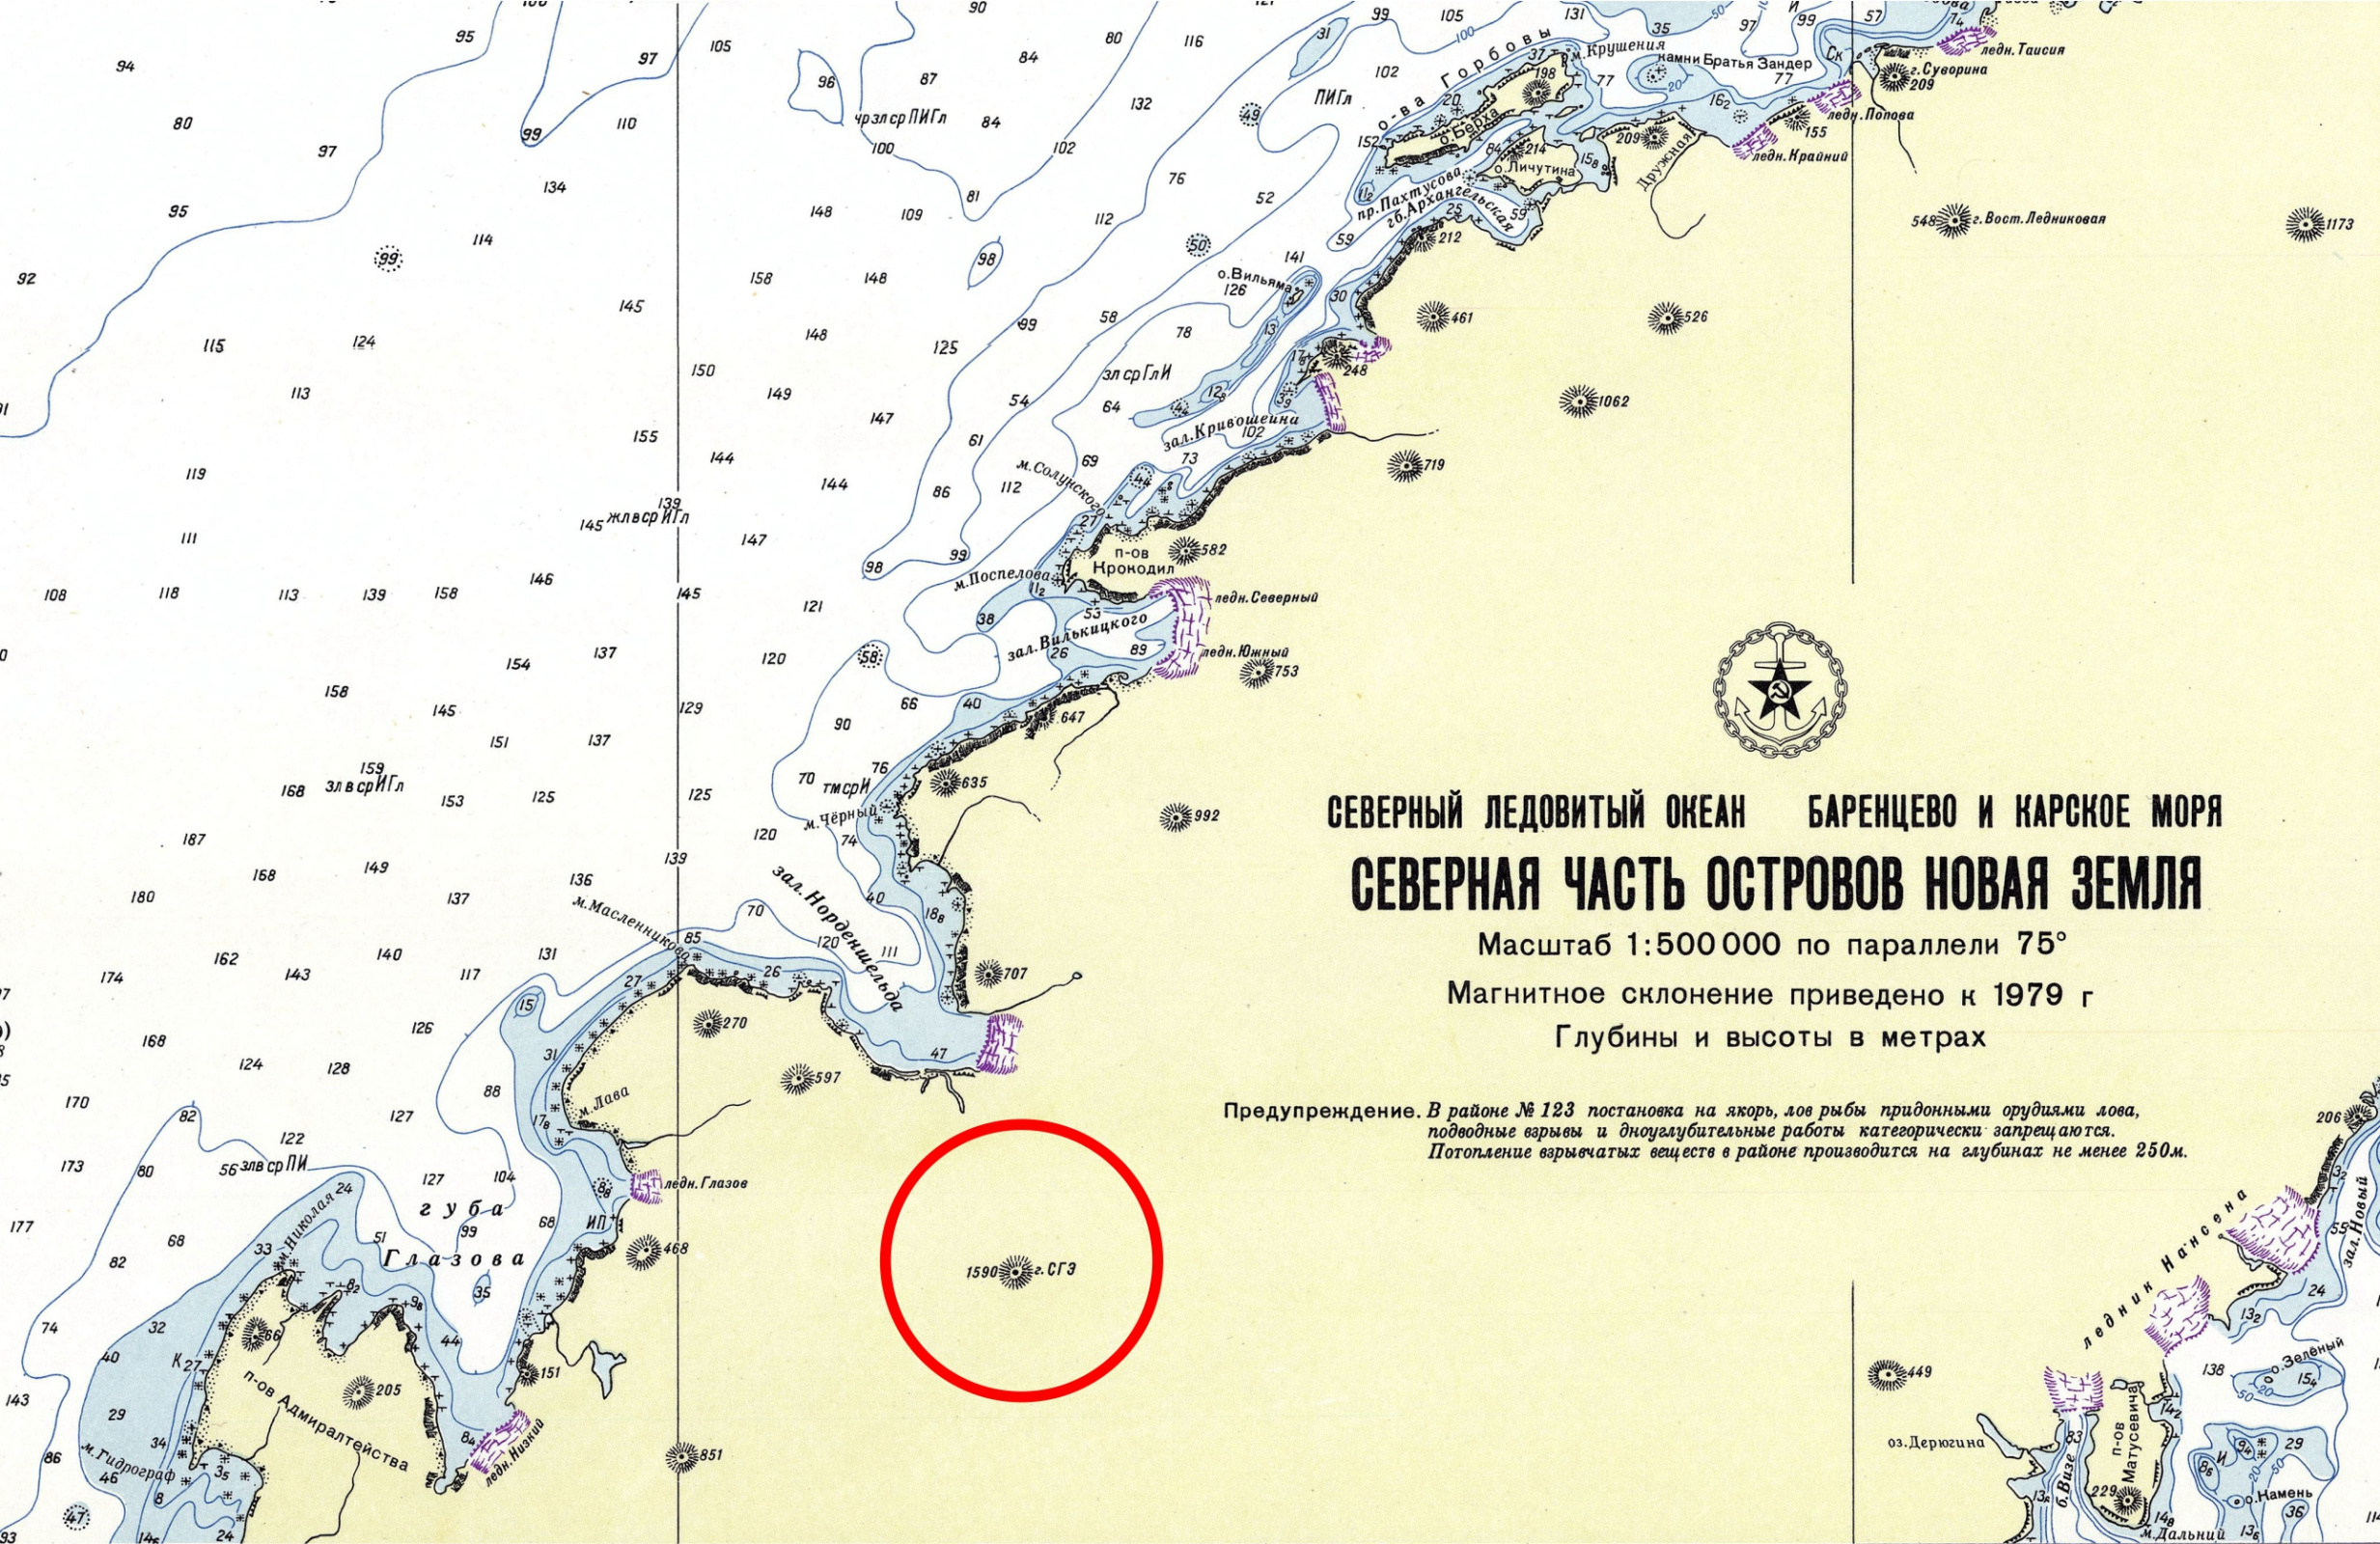 Фрагмент Государственной морской навигационной карты (Адм. №11122), издание 1975 года